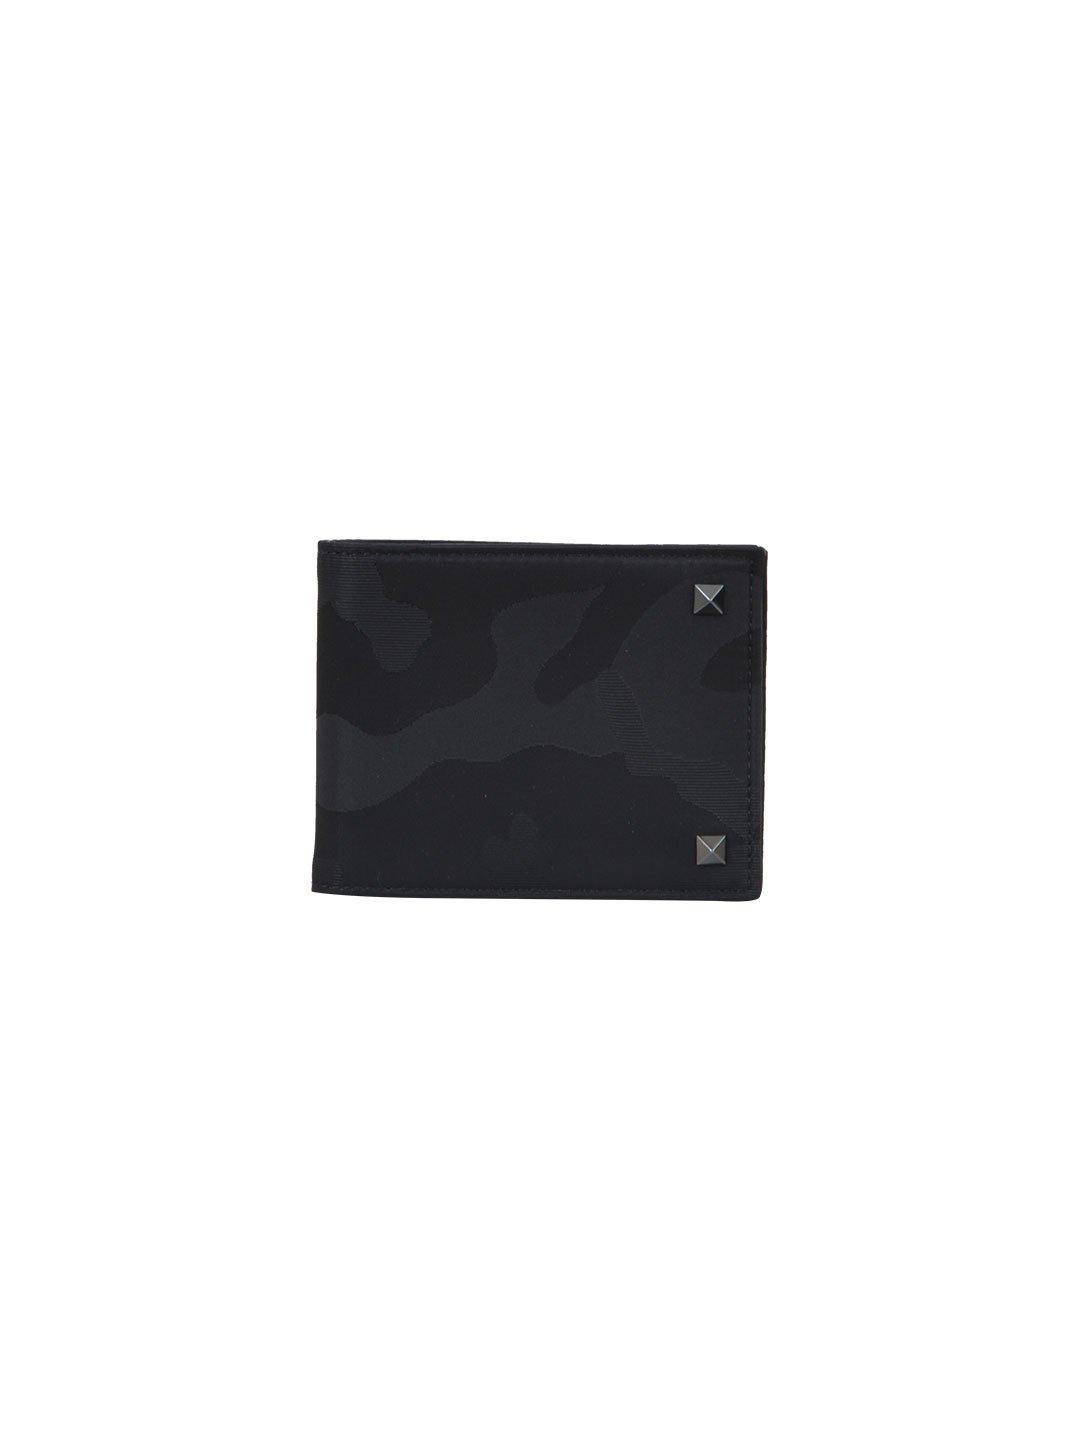 Valentino Garavani Rockstud Camouflage Wallet In Black | ModeSens